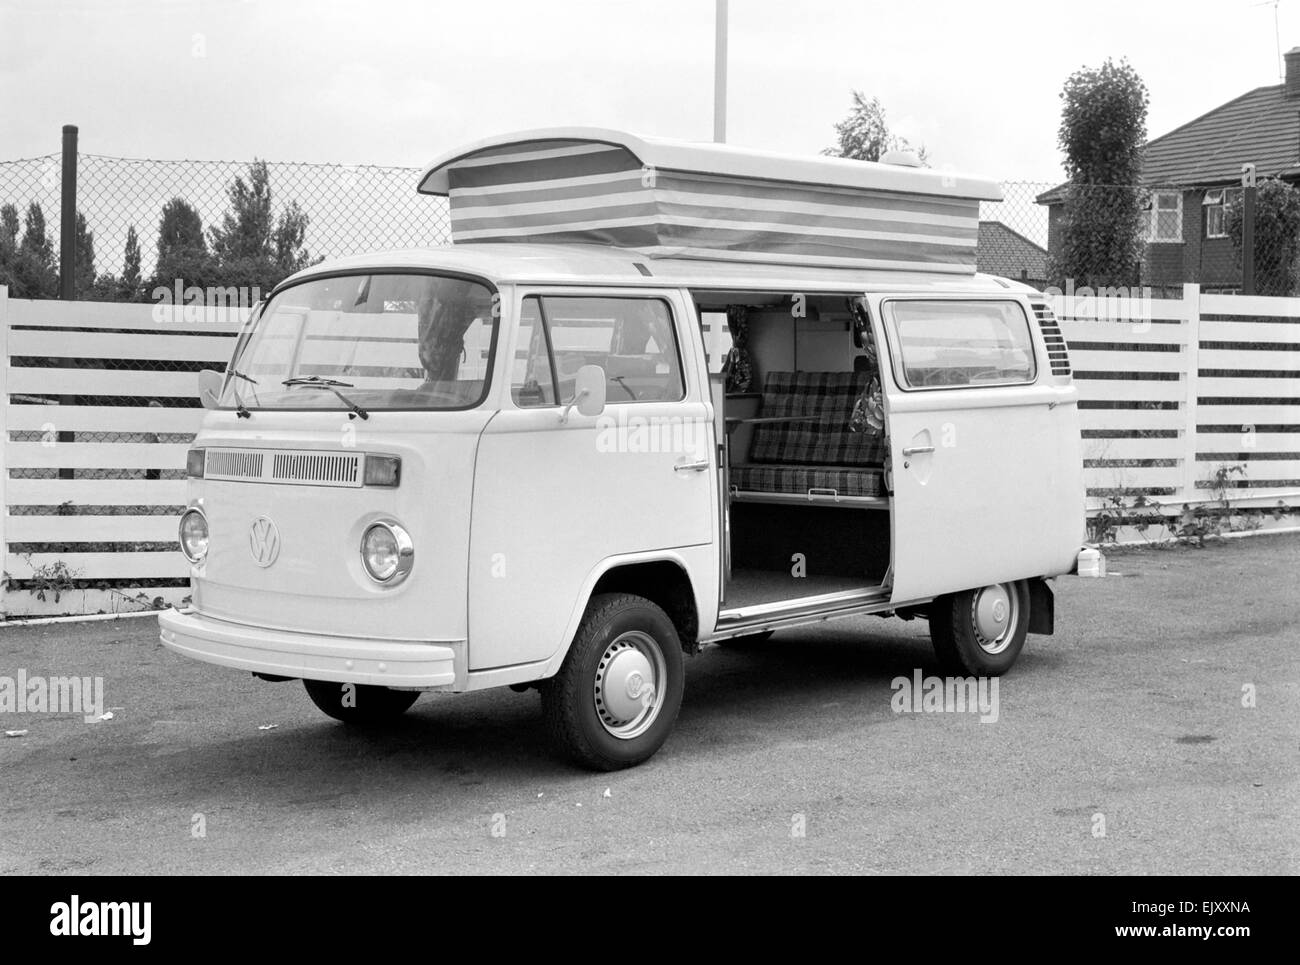 Volkswagen Devon Moonraker motor caravan. August 1978 78-3944-006 *** Local Caption *** planman -  - 03/02/2010 Stock Photo